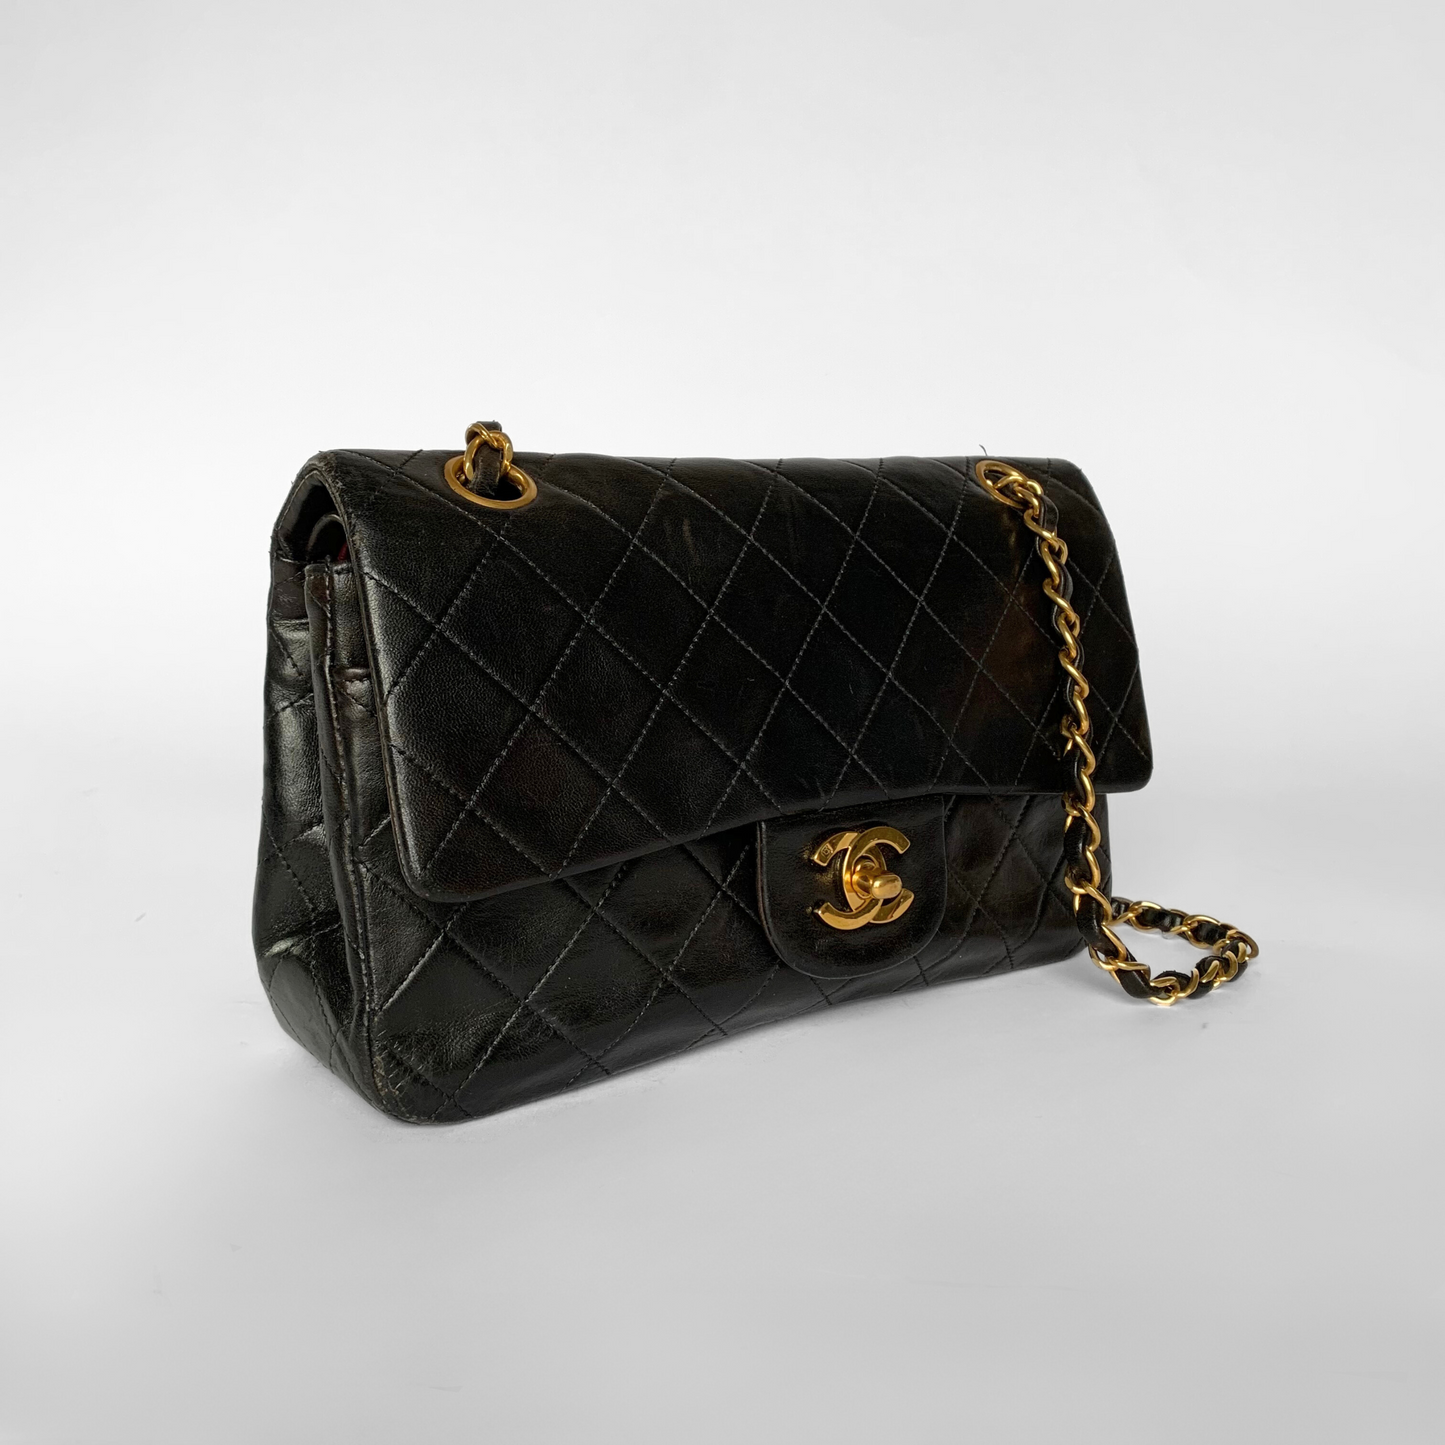 Chanel Chanel Klassiek Lamsleer met Dubbele Flap - Handtassen - Etoile Luxury Vintage